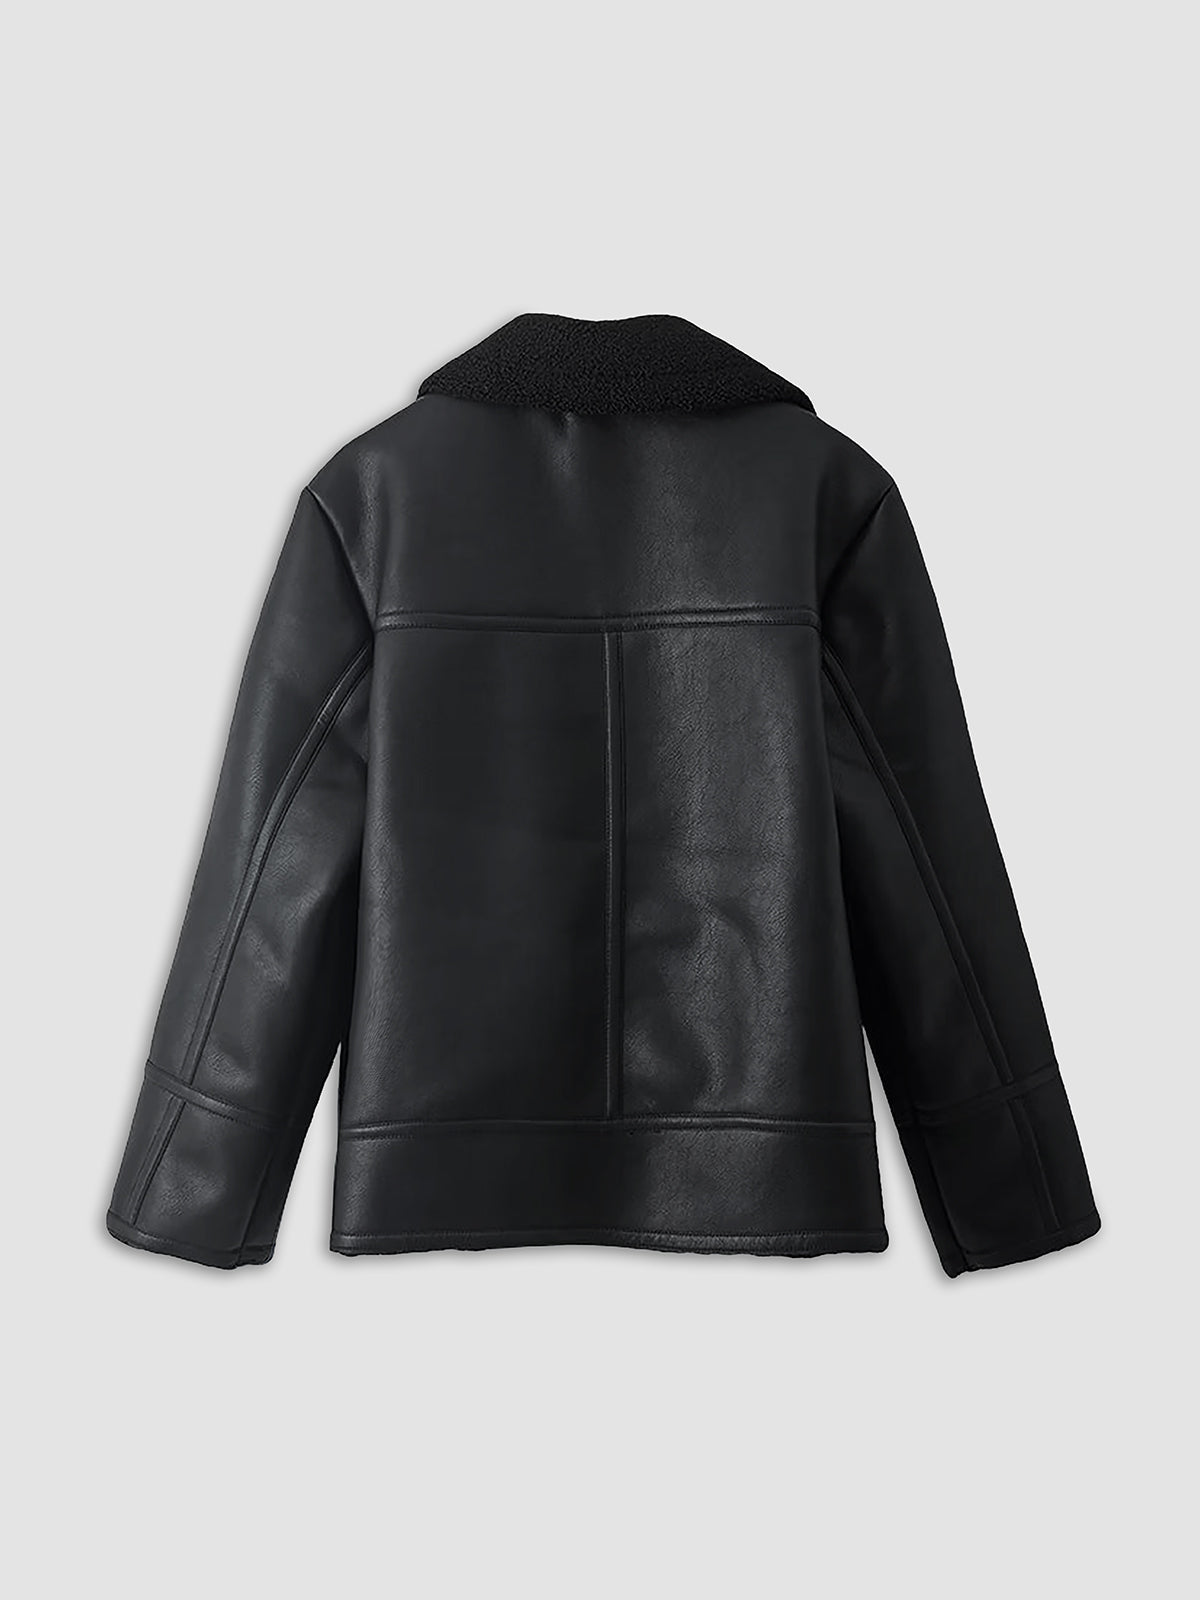 Ultra Warm Shearling Leather Flight Jacket